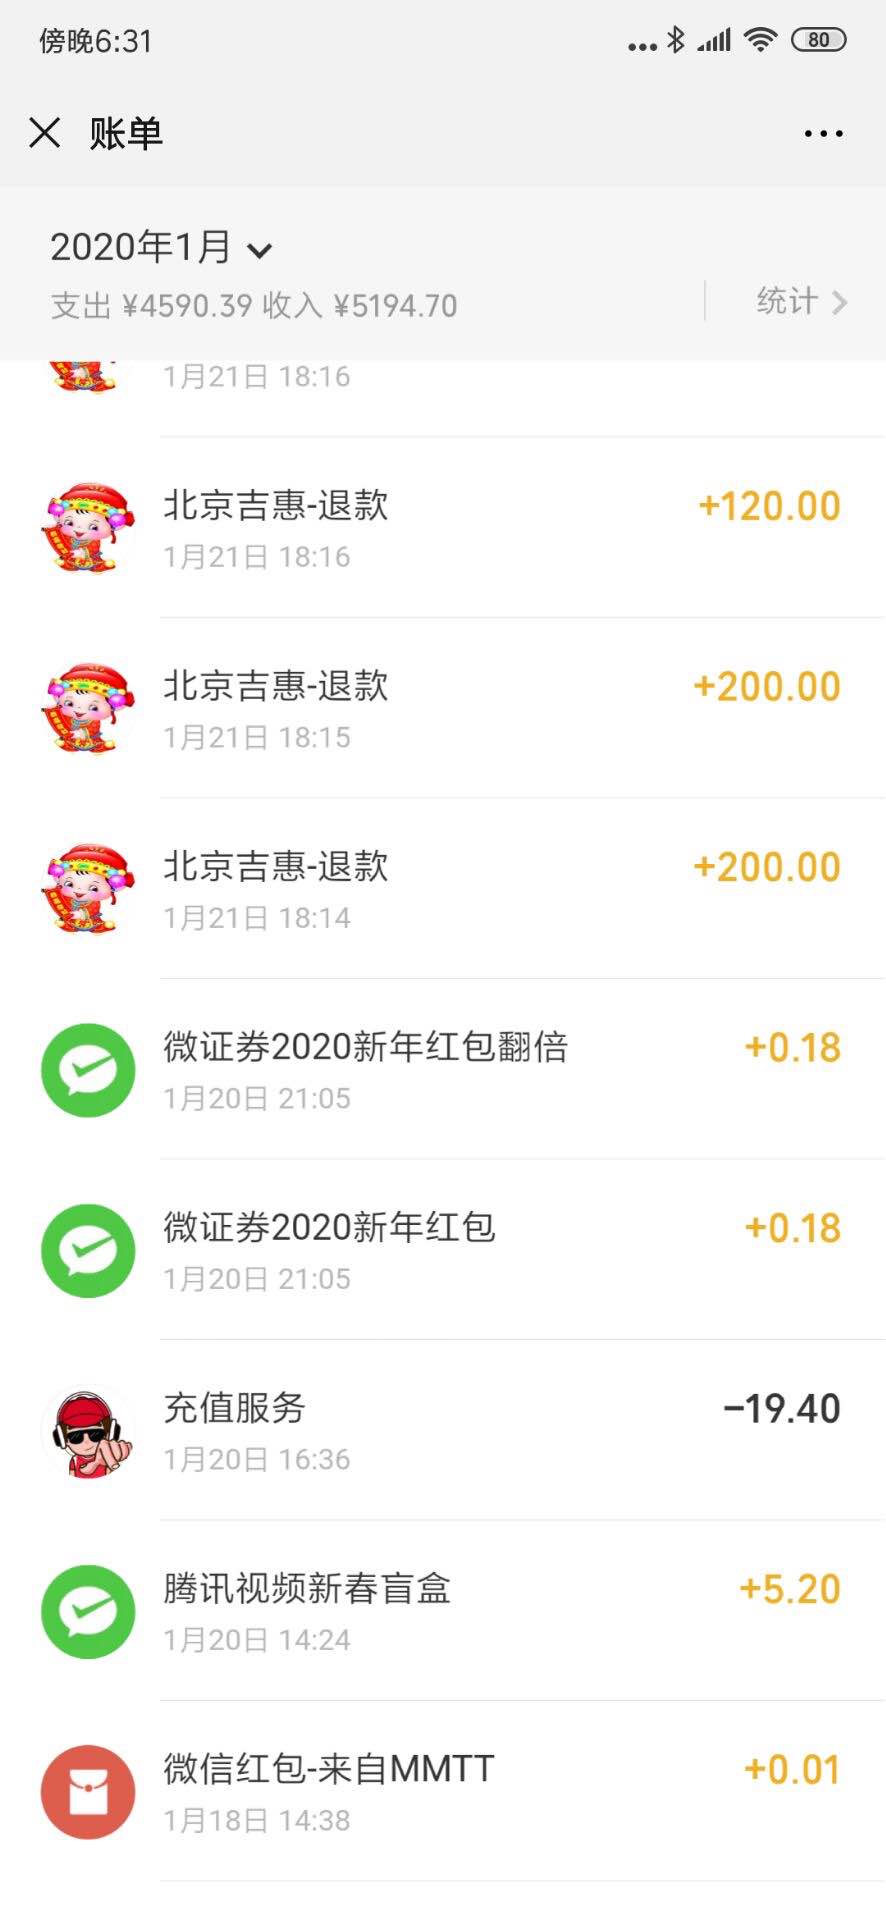 最新消息-北京吉惠退款了-600块钱跟捡回来的一样-哈哈哈-惠小助(52huixz.com)